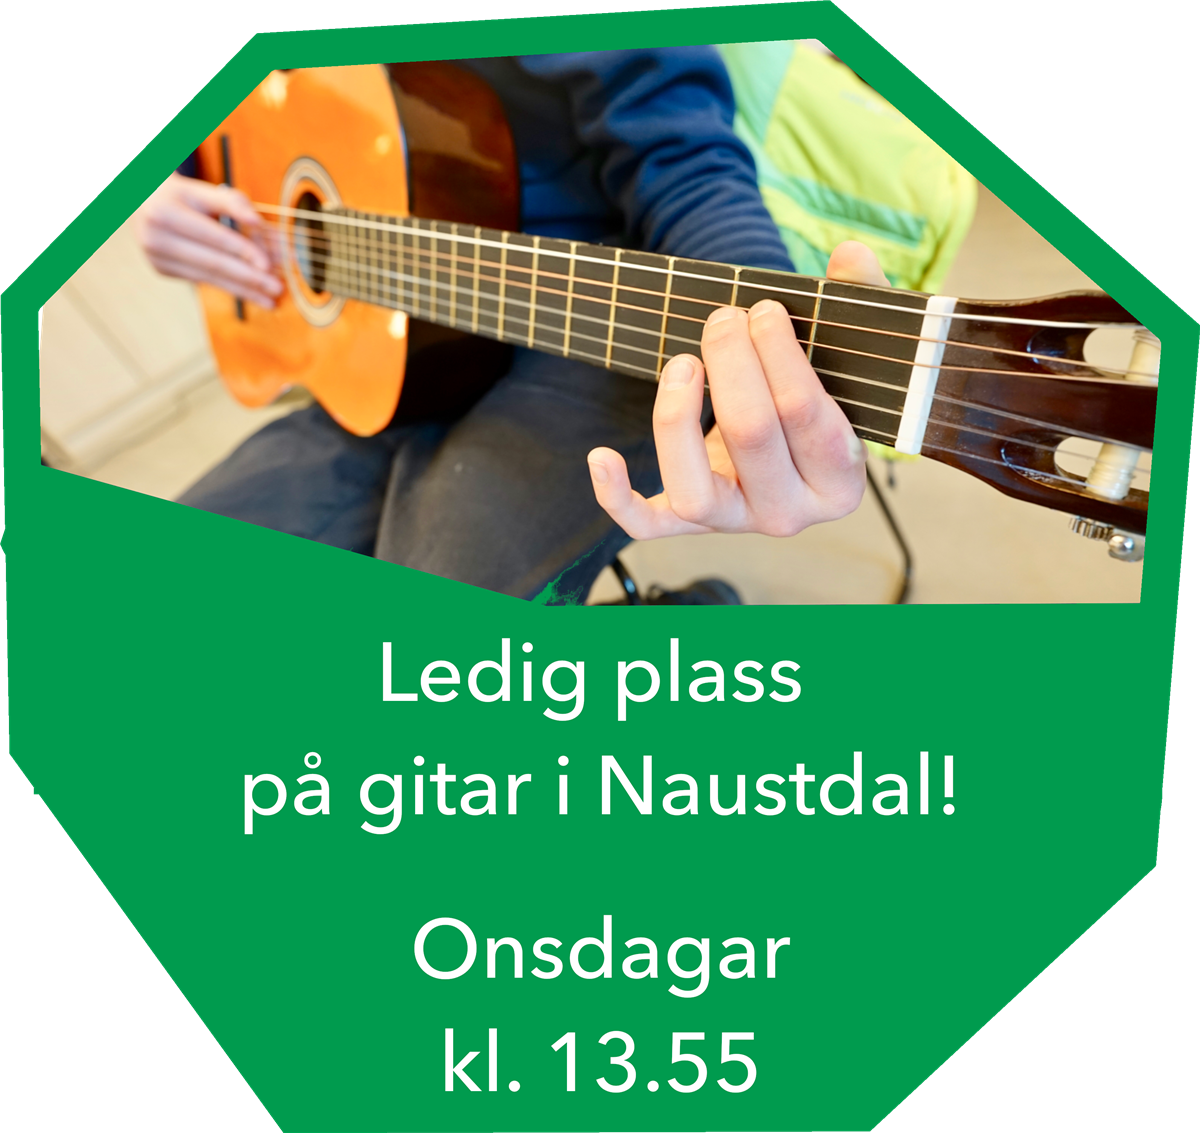 Barnehender spelar gitar, tekst: ledig plass på gitar i Naustdal onsdagar kl. 13.55 - Klikk for stort bilete